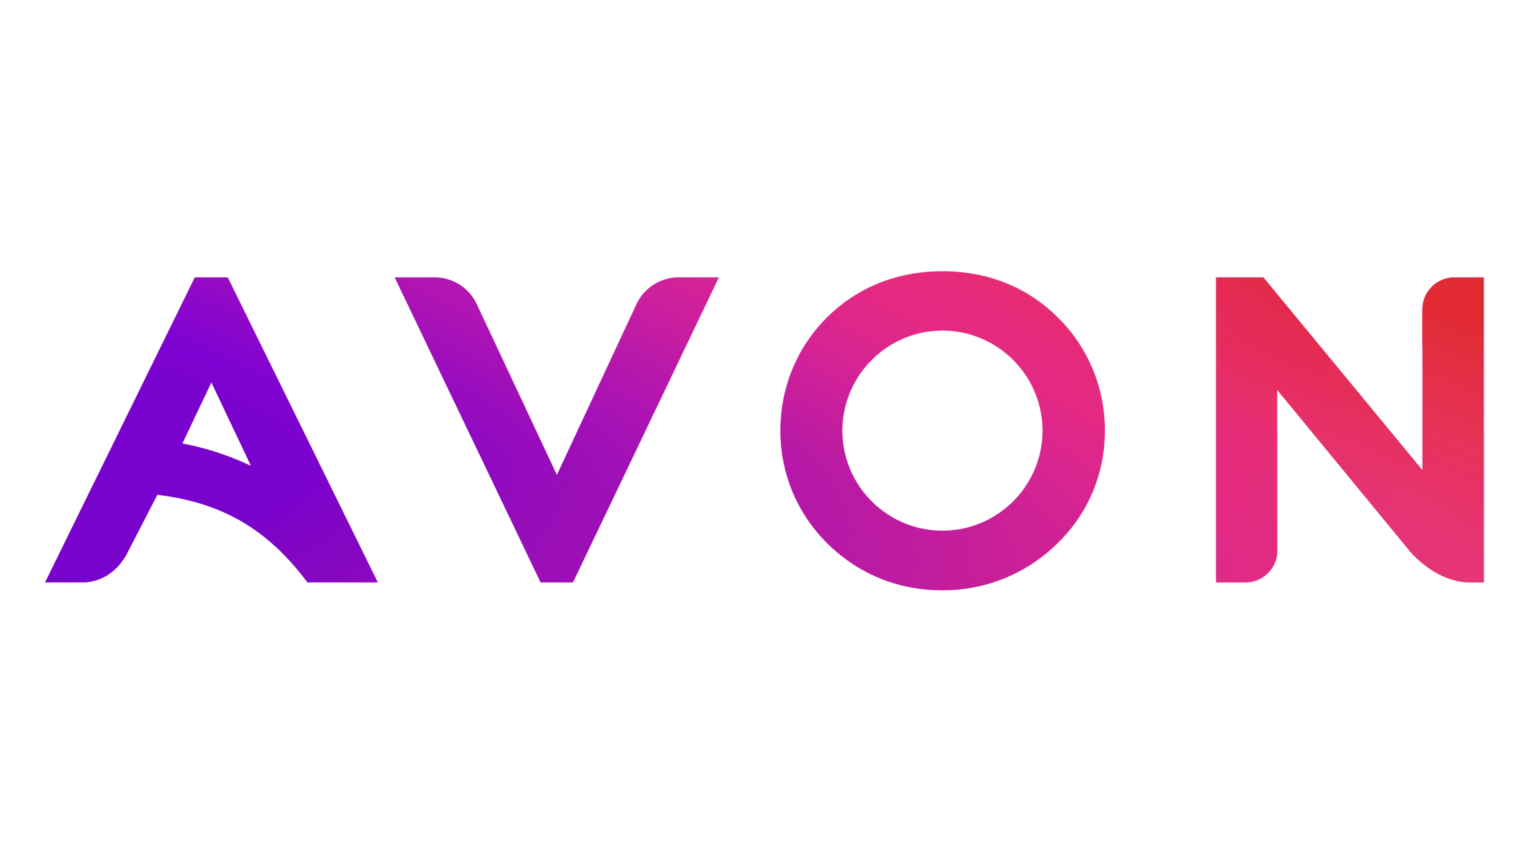 logo-Avon